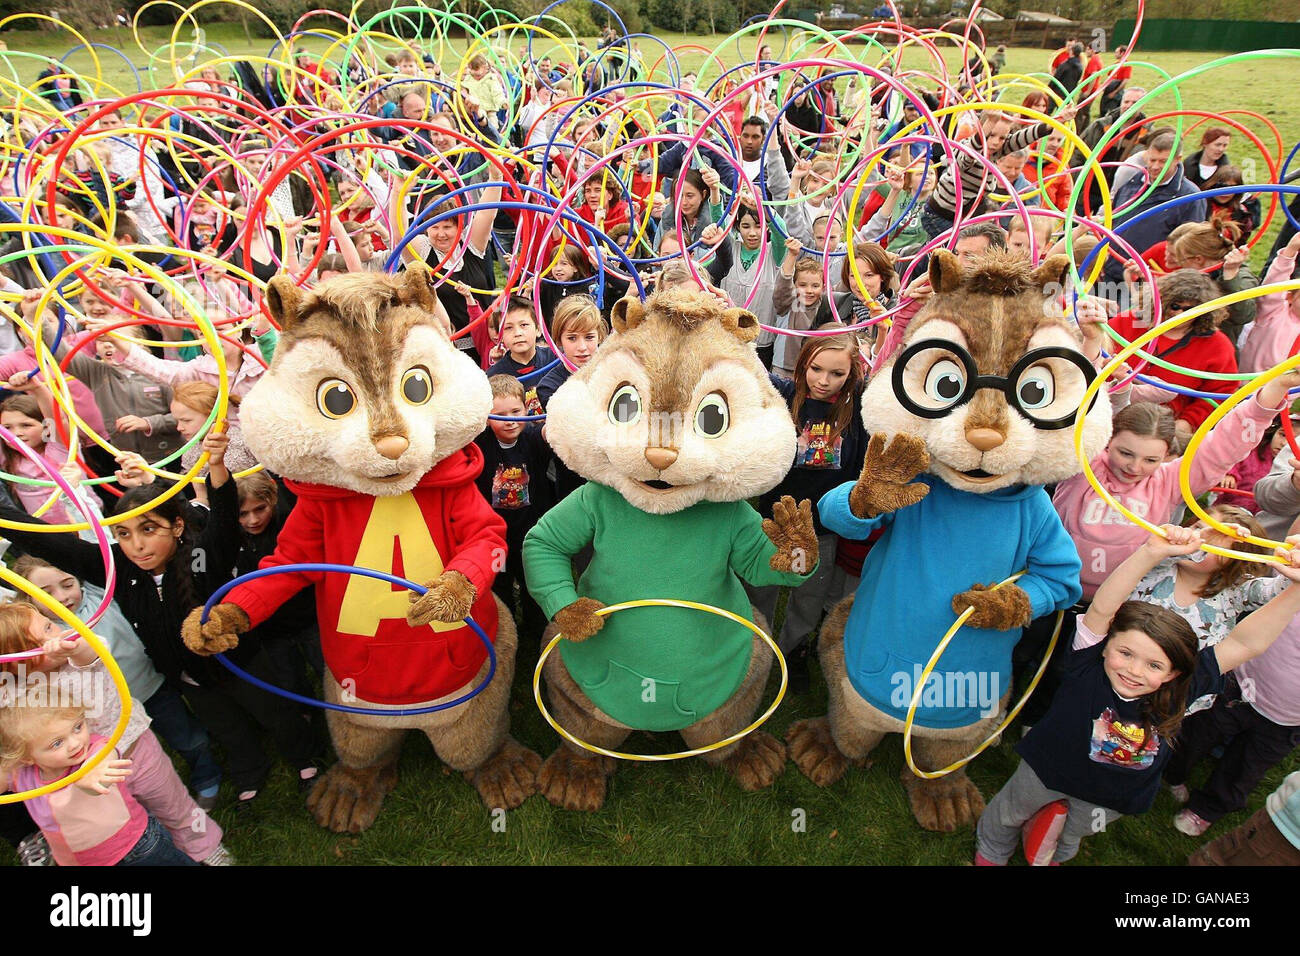 Über 300 Kinder haben einen neuen Guinness-Weltrekord für die weltweit größte Hula Hoop Dance Routine aufgestellt und die DVD-Veröffentlichung der Familienkomödie Alvin and the Chipmunks in Chessington World of Adventure in London markiert. Stockfoto